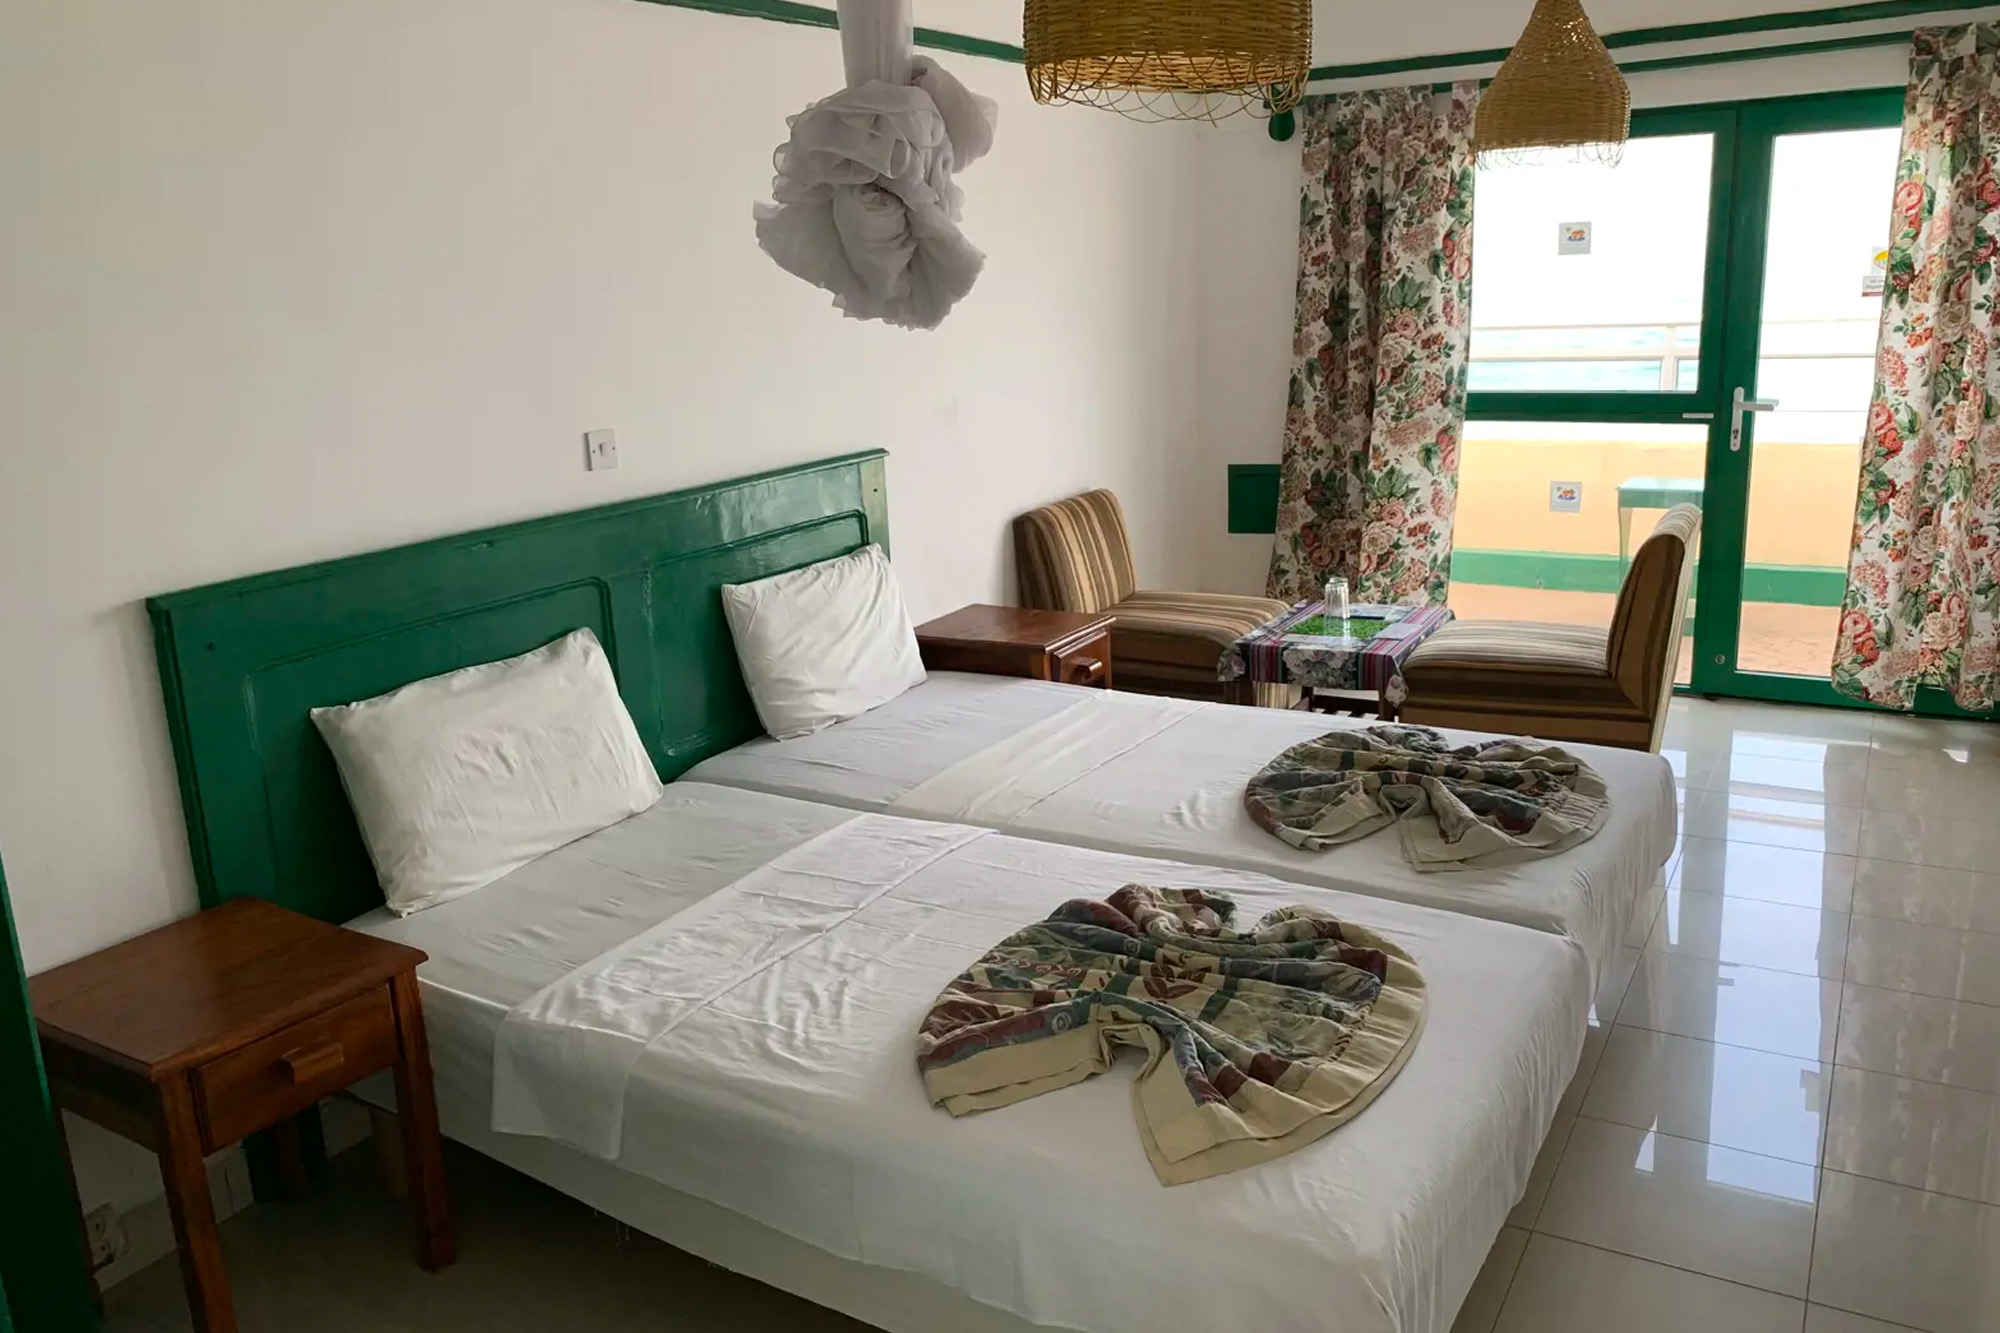 Hotelkamer van het African Village resort in Cape Point, Gambia